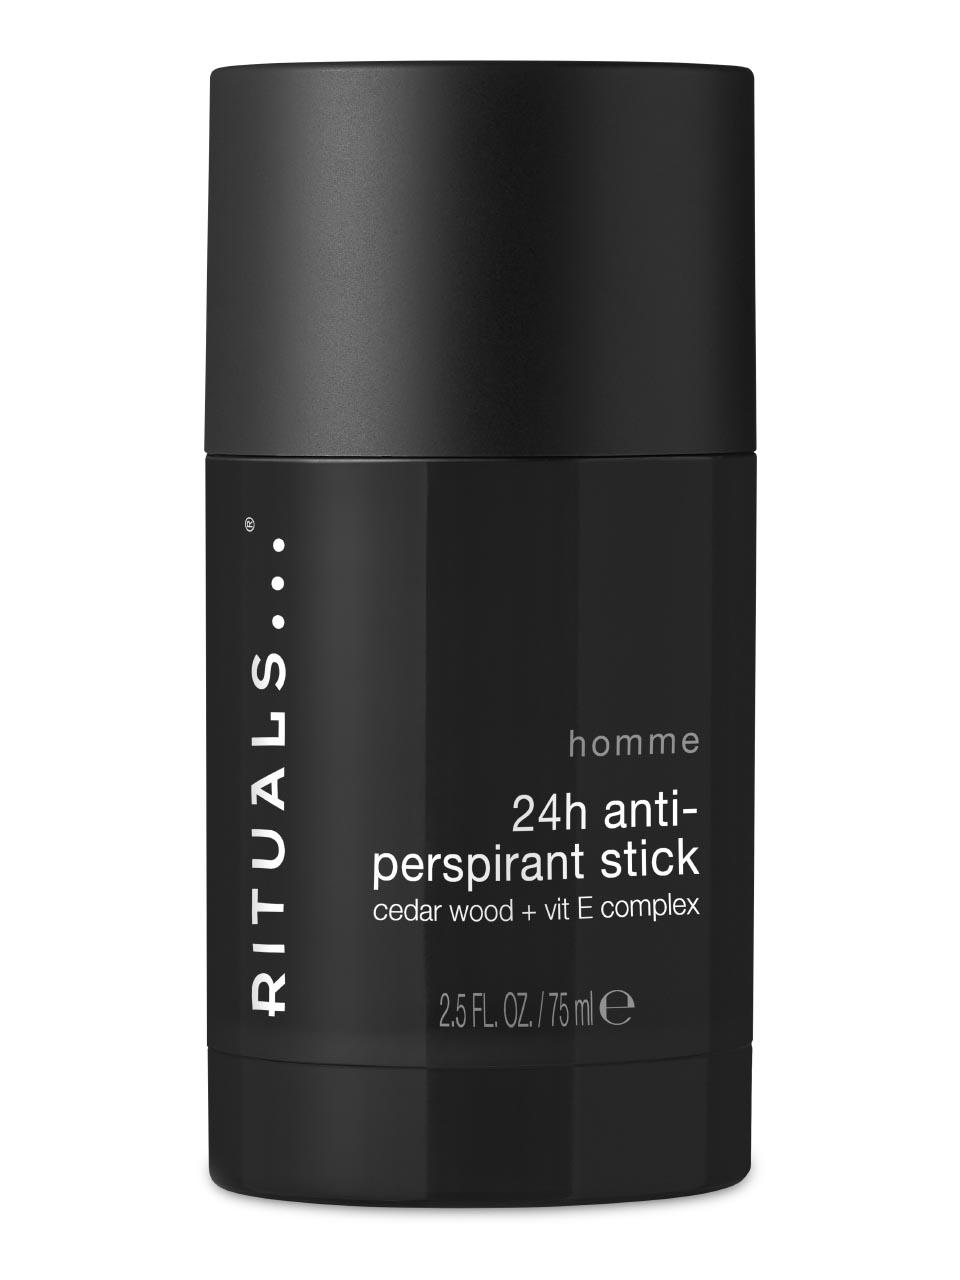 Rituals - The Ritual of Jing Anti-Perspirant Stick 75 ml